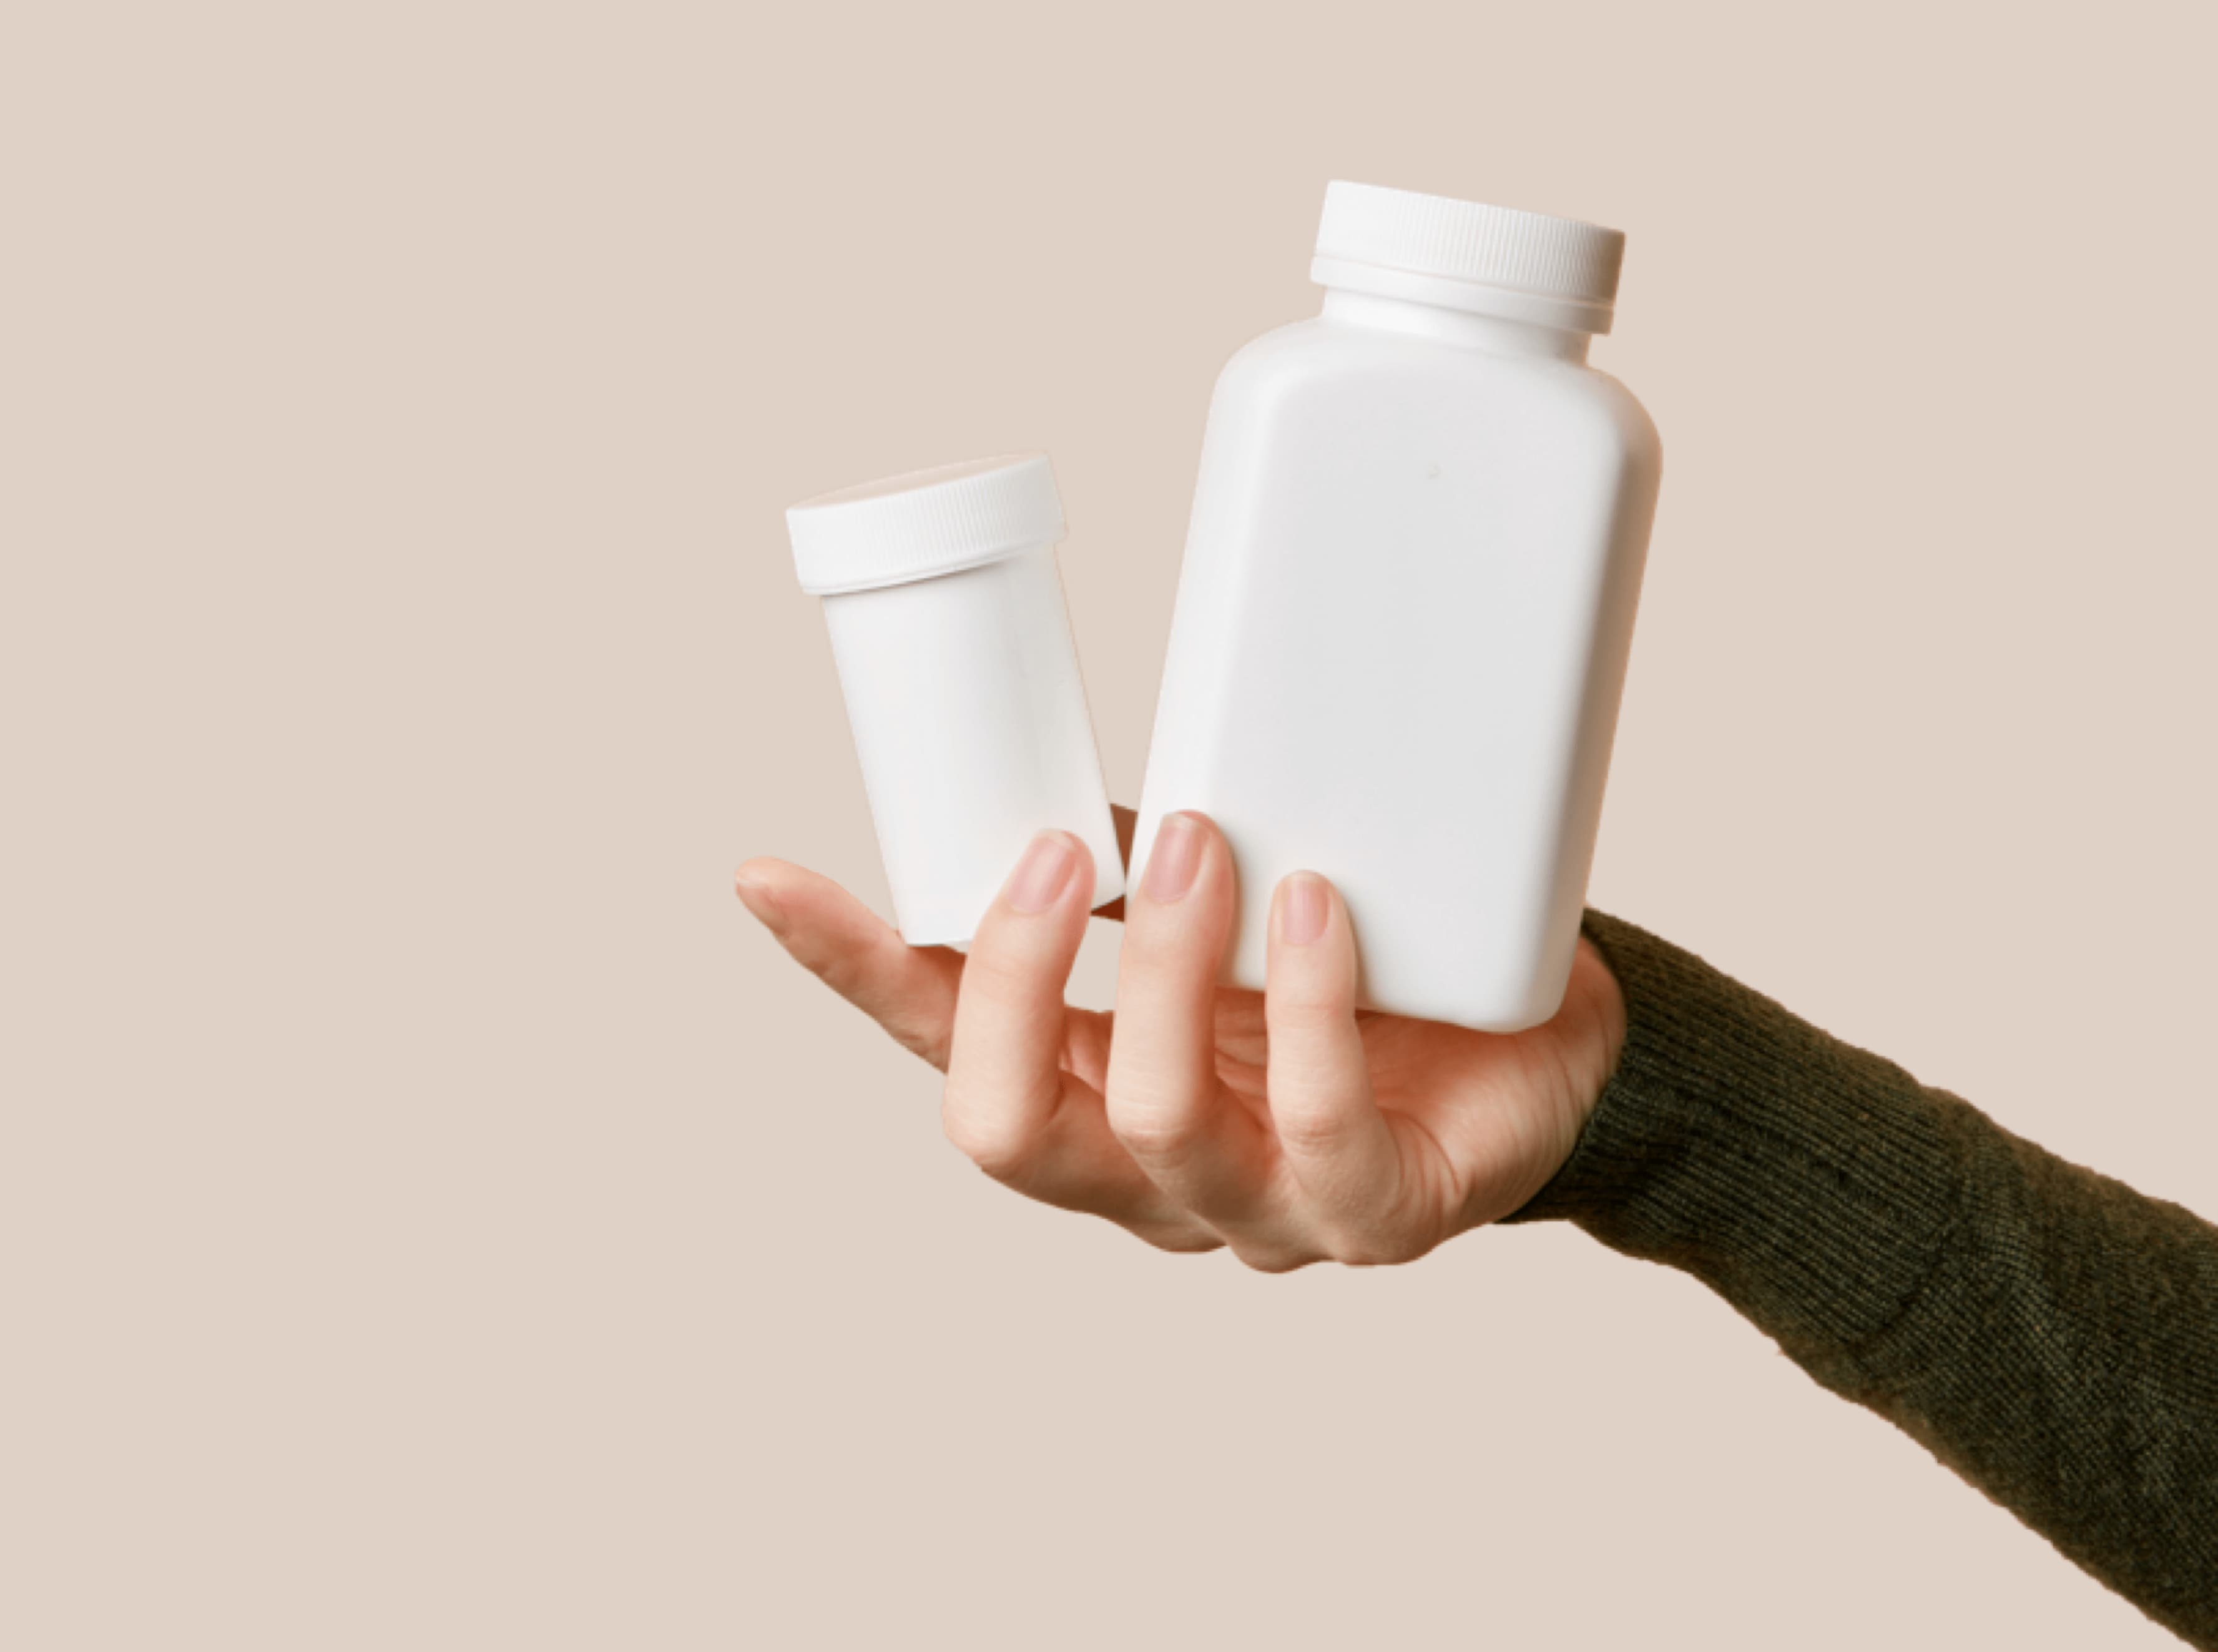 Hand holding white pill bottles.